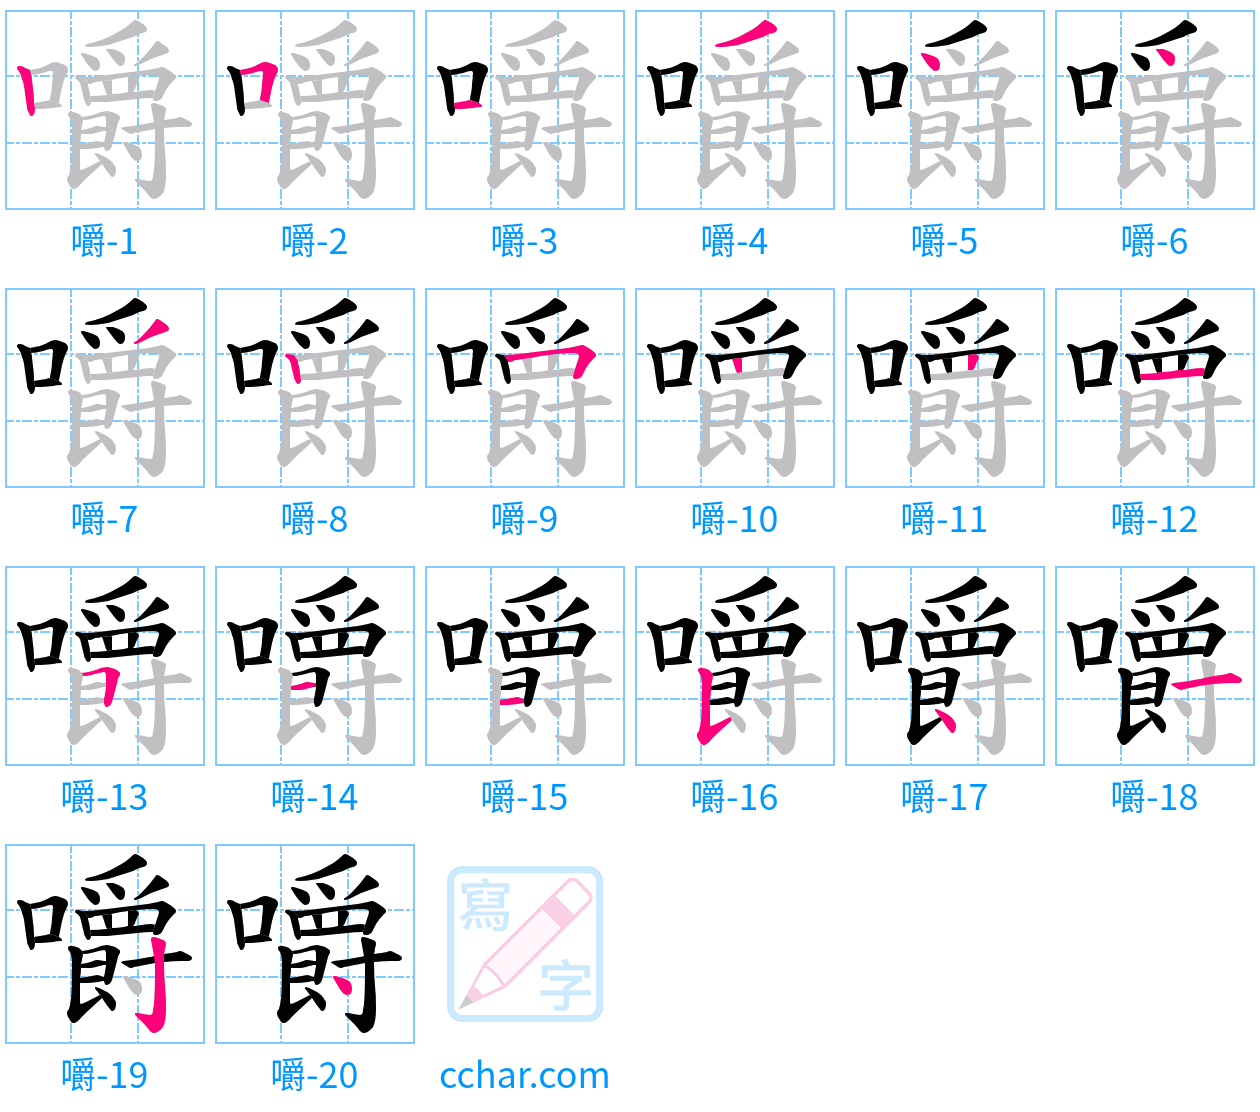 嚼 stroke order step-by-step diagram